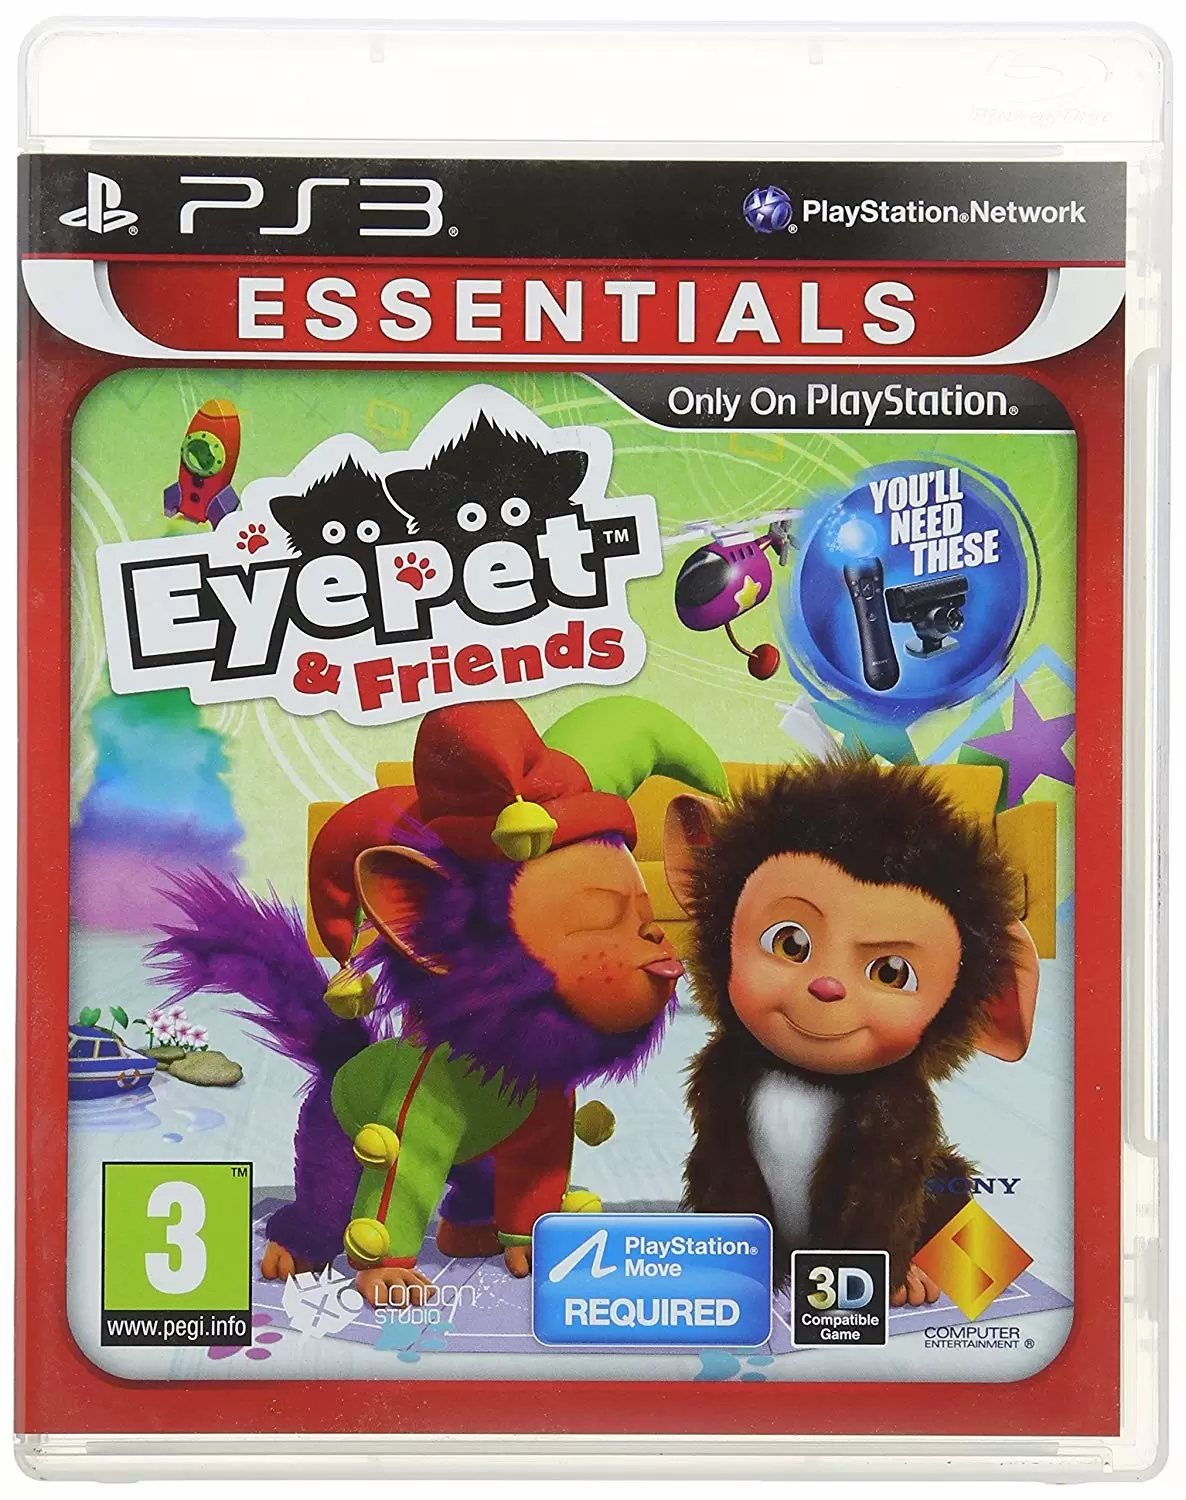 PS3 Games - EyePet & Friends (Essentials)